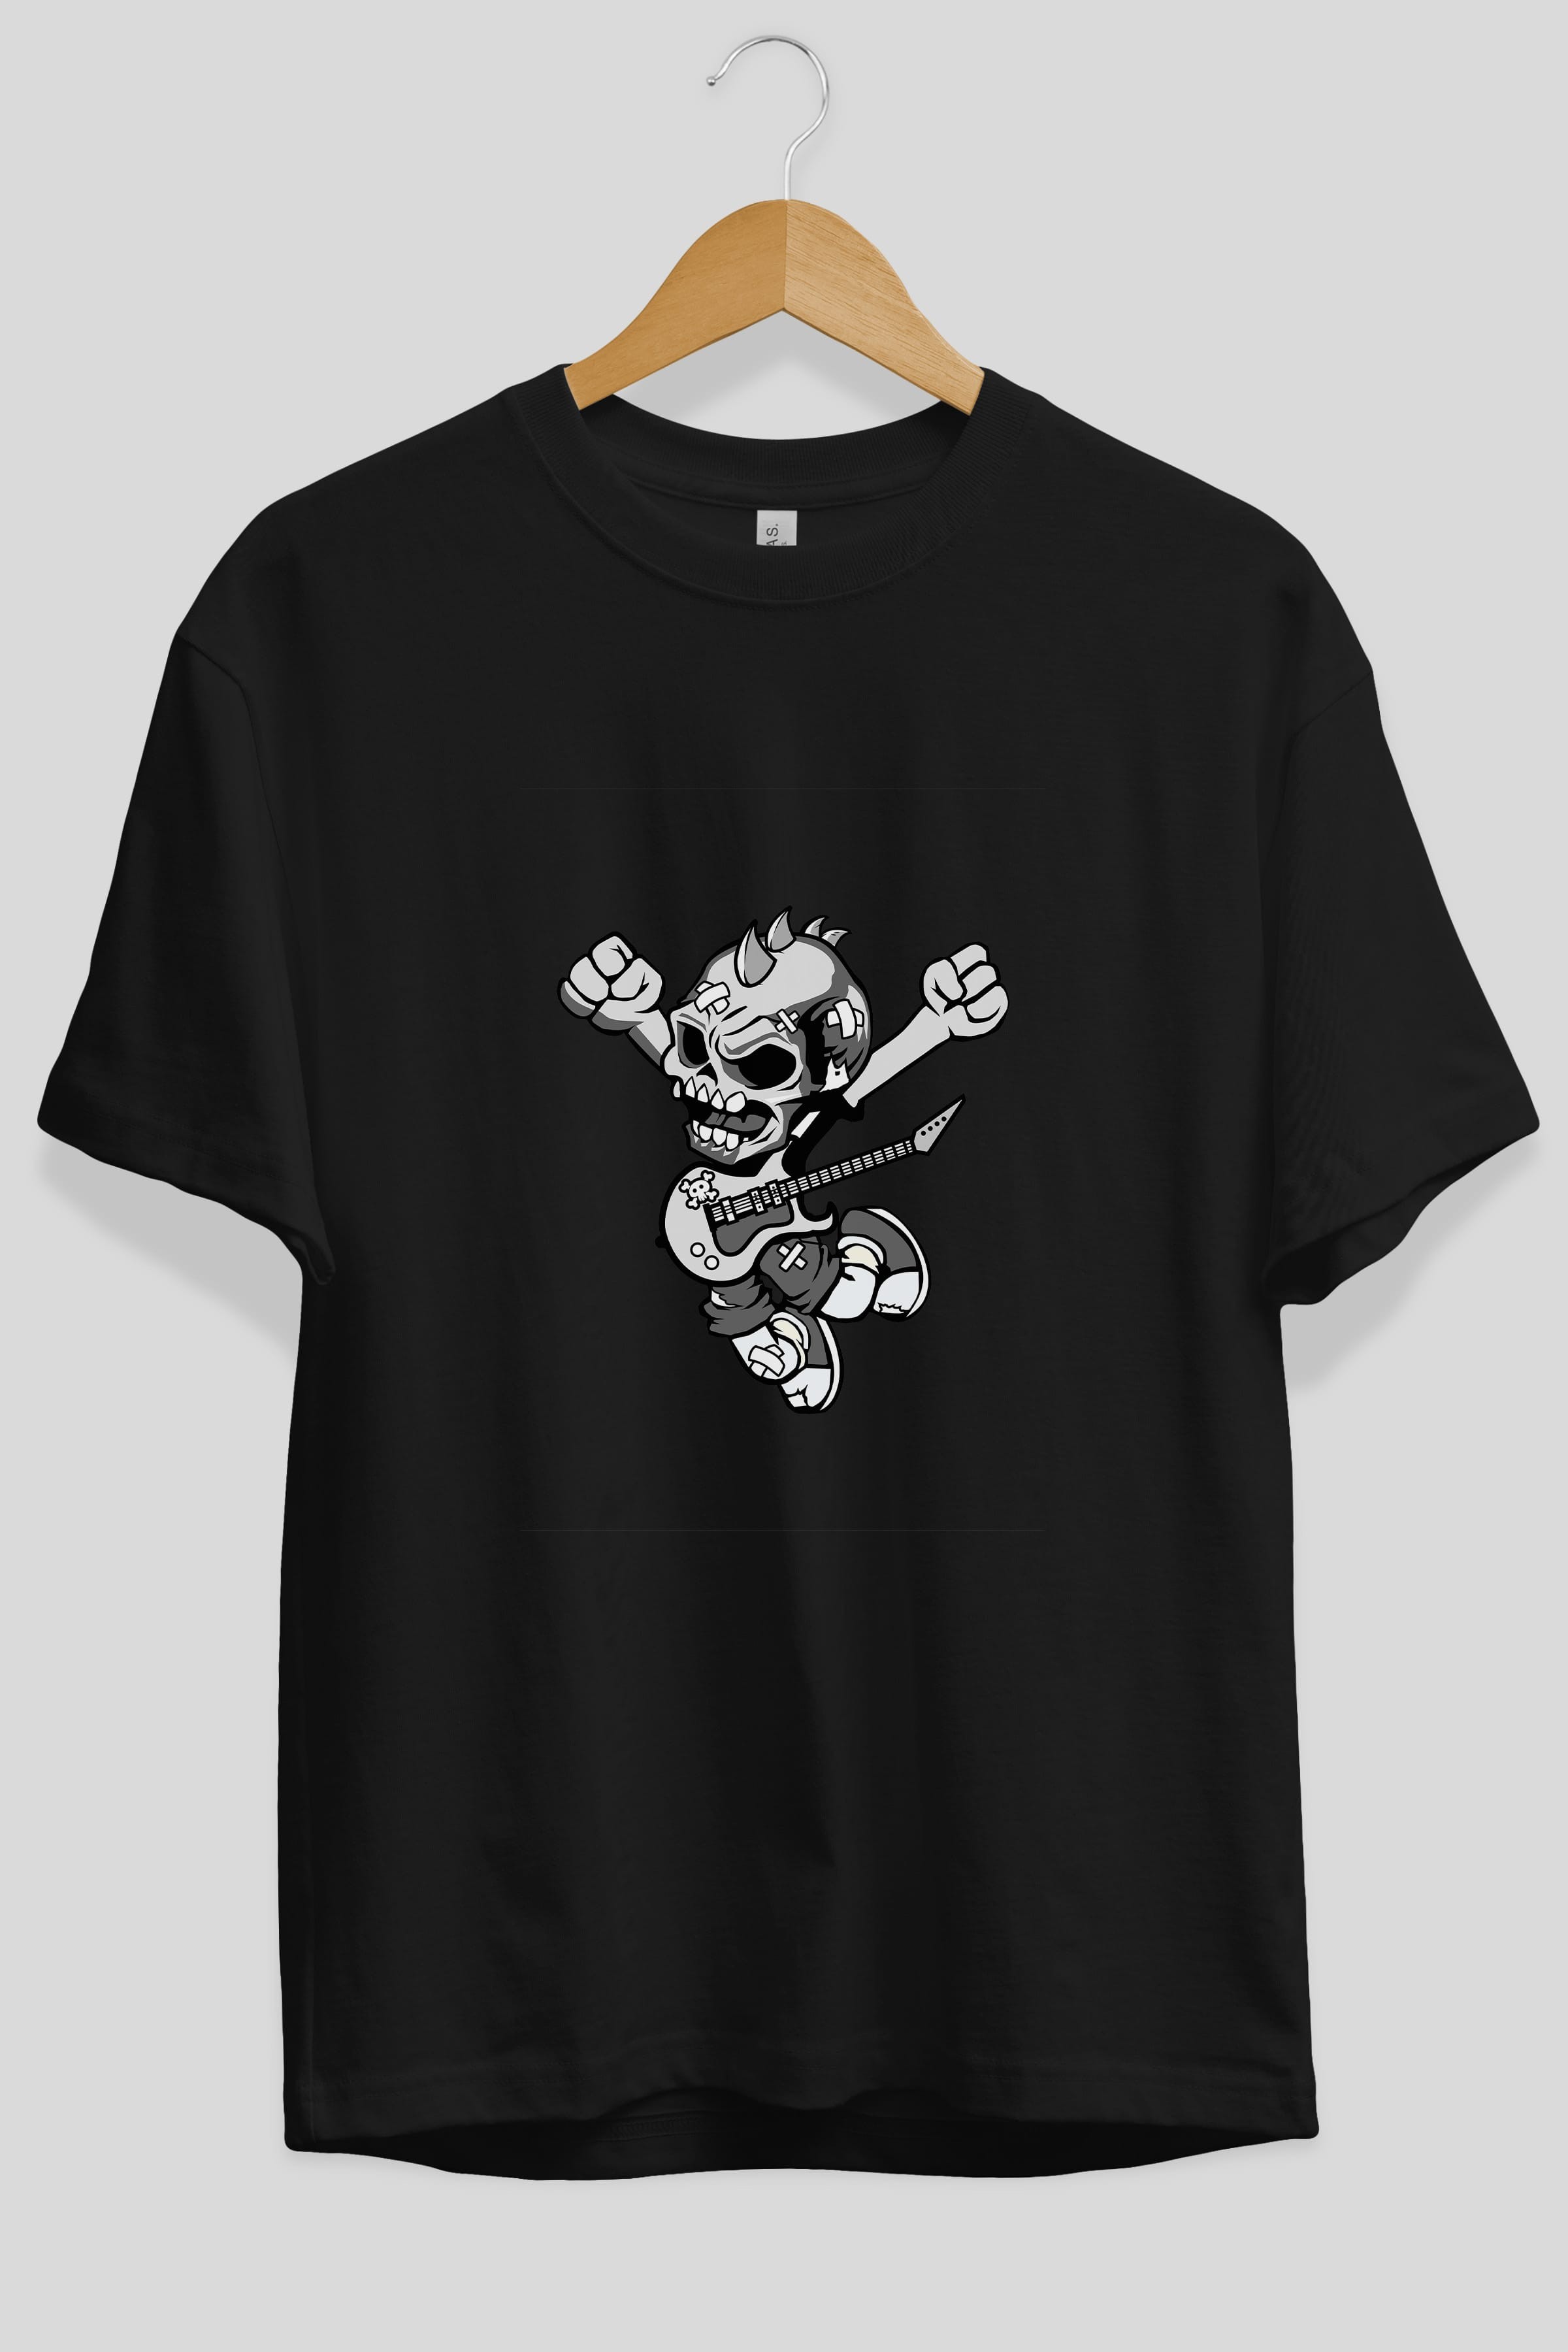 Punk Rocker Metal Guitar Ön Baskılı Oversize t-shirt Erkek Kadın Unisex %100 Pamuk tişort